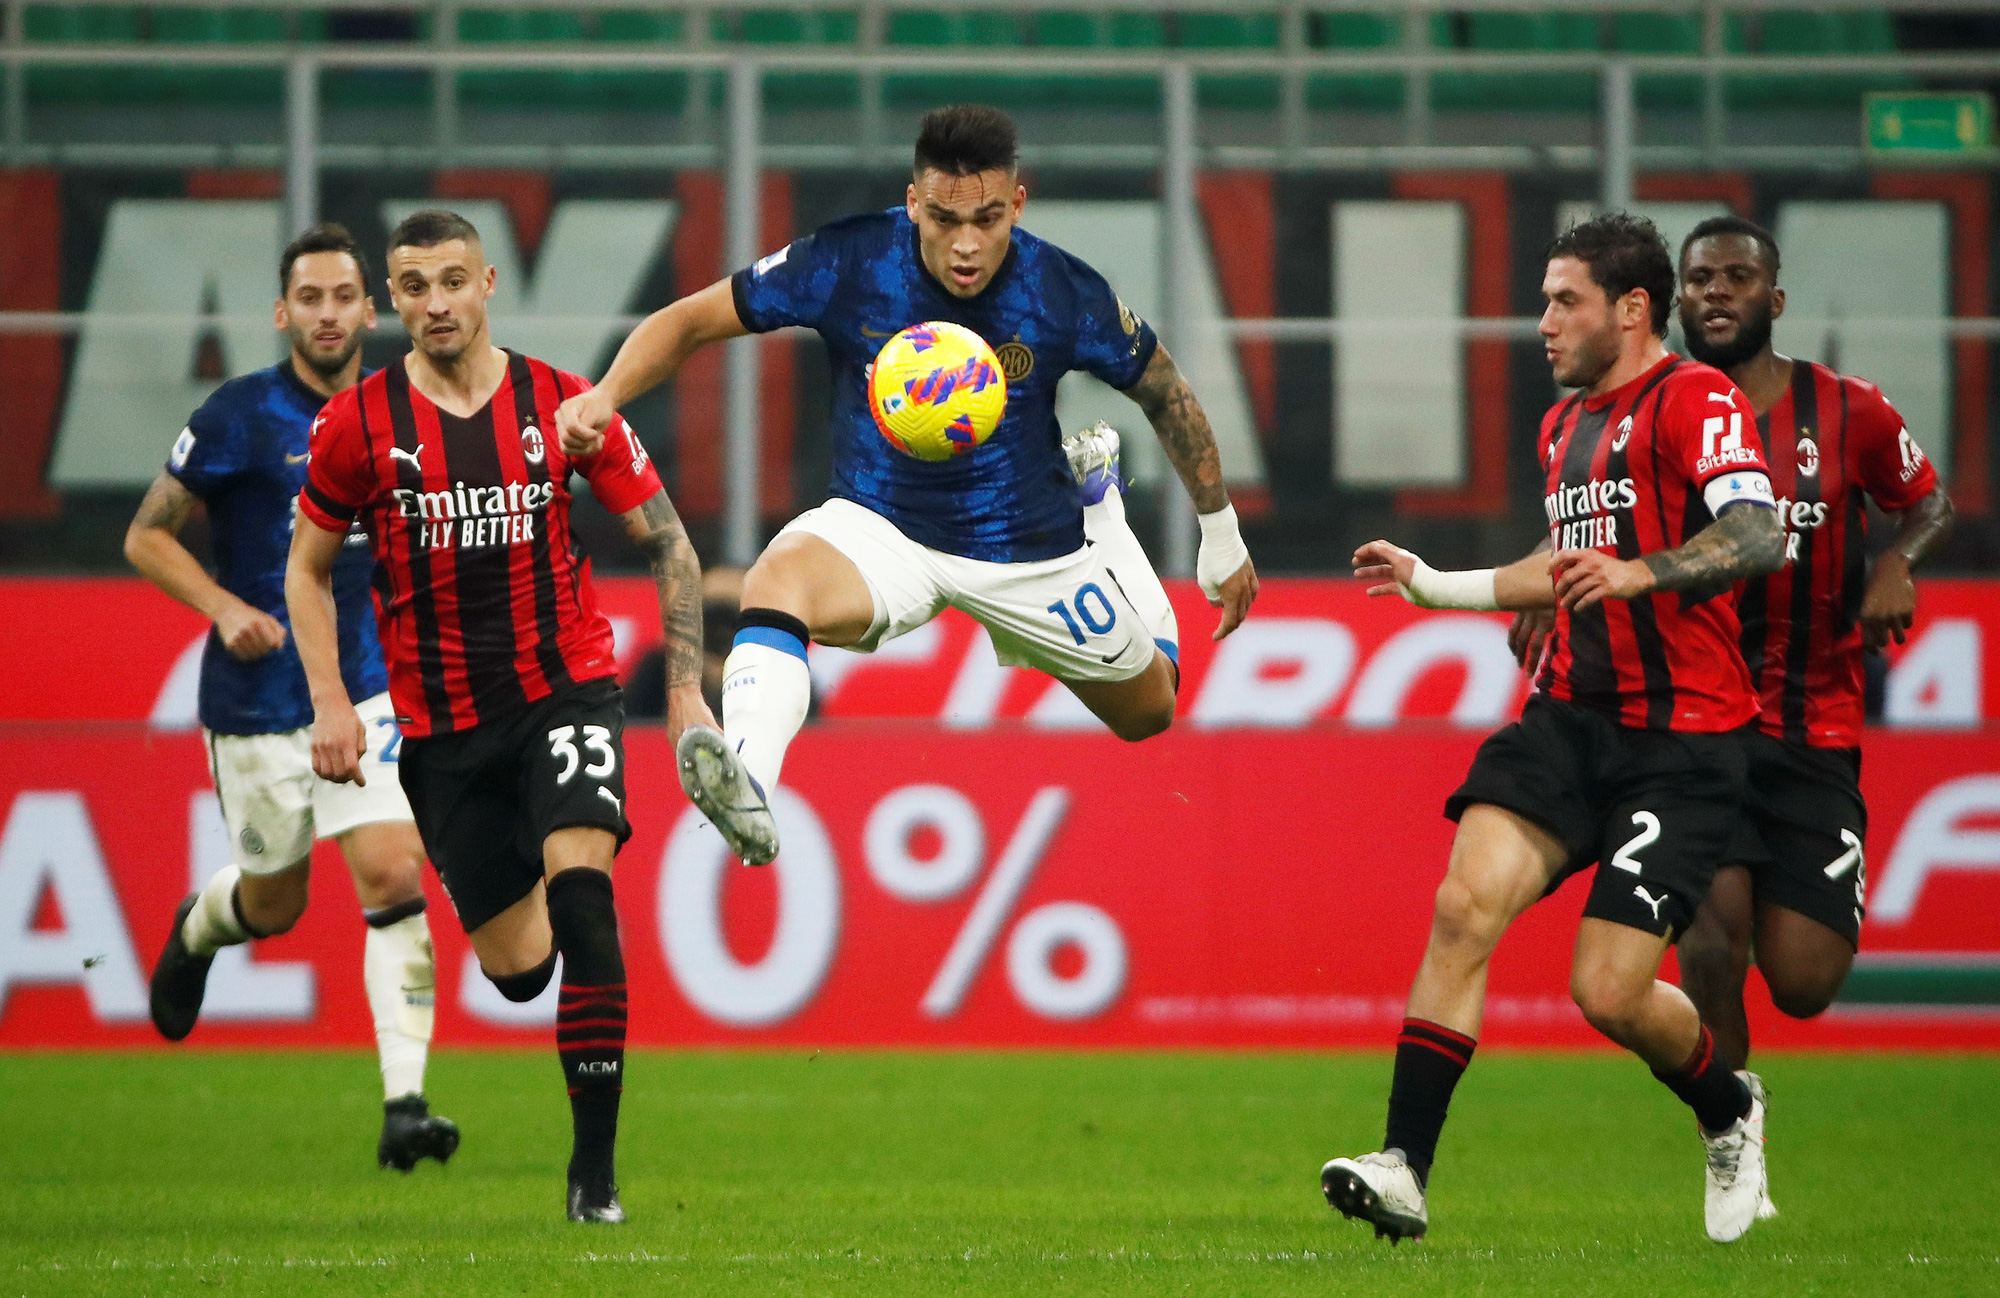 Bị Inter Milan cầm hòa, AC Milan vuột cơ hội dẫn đầu bảng Serie A - Ảnh 1.